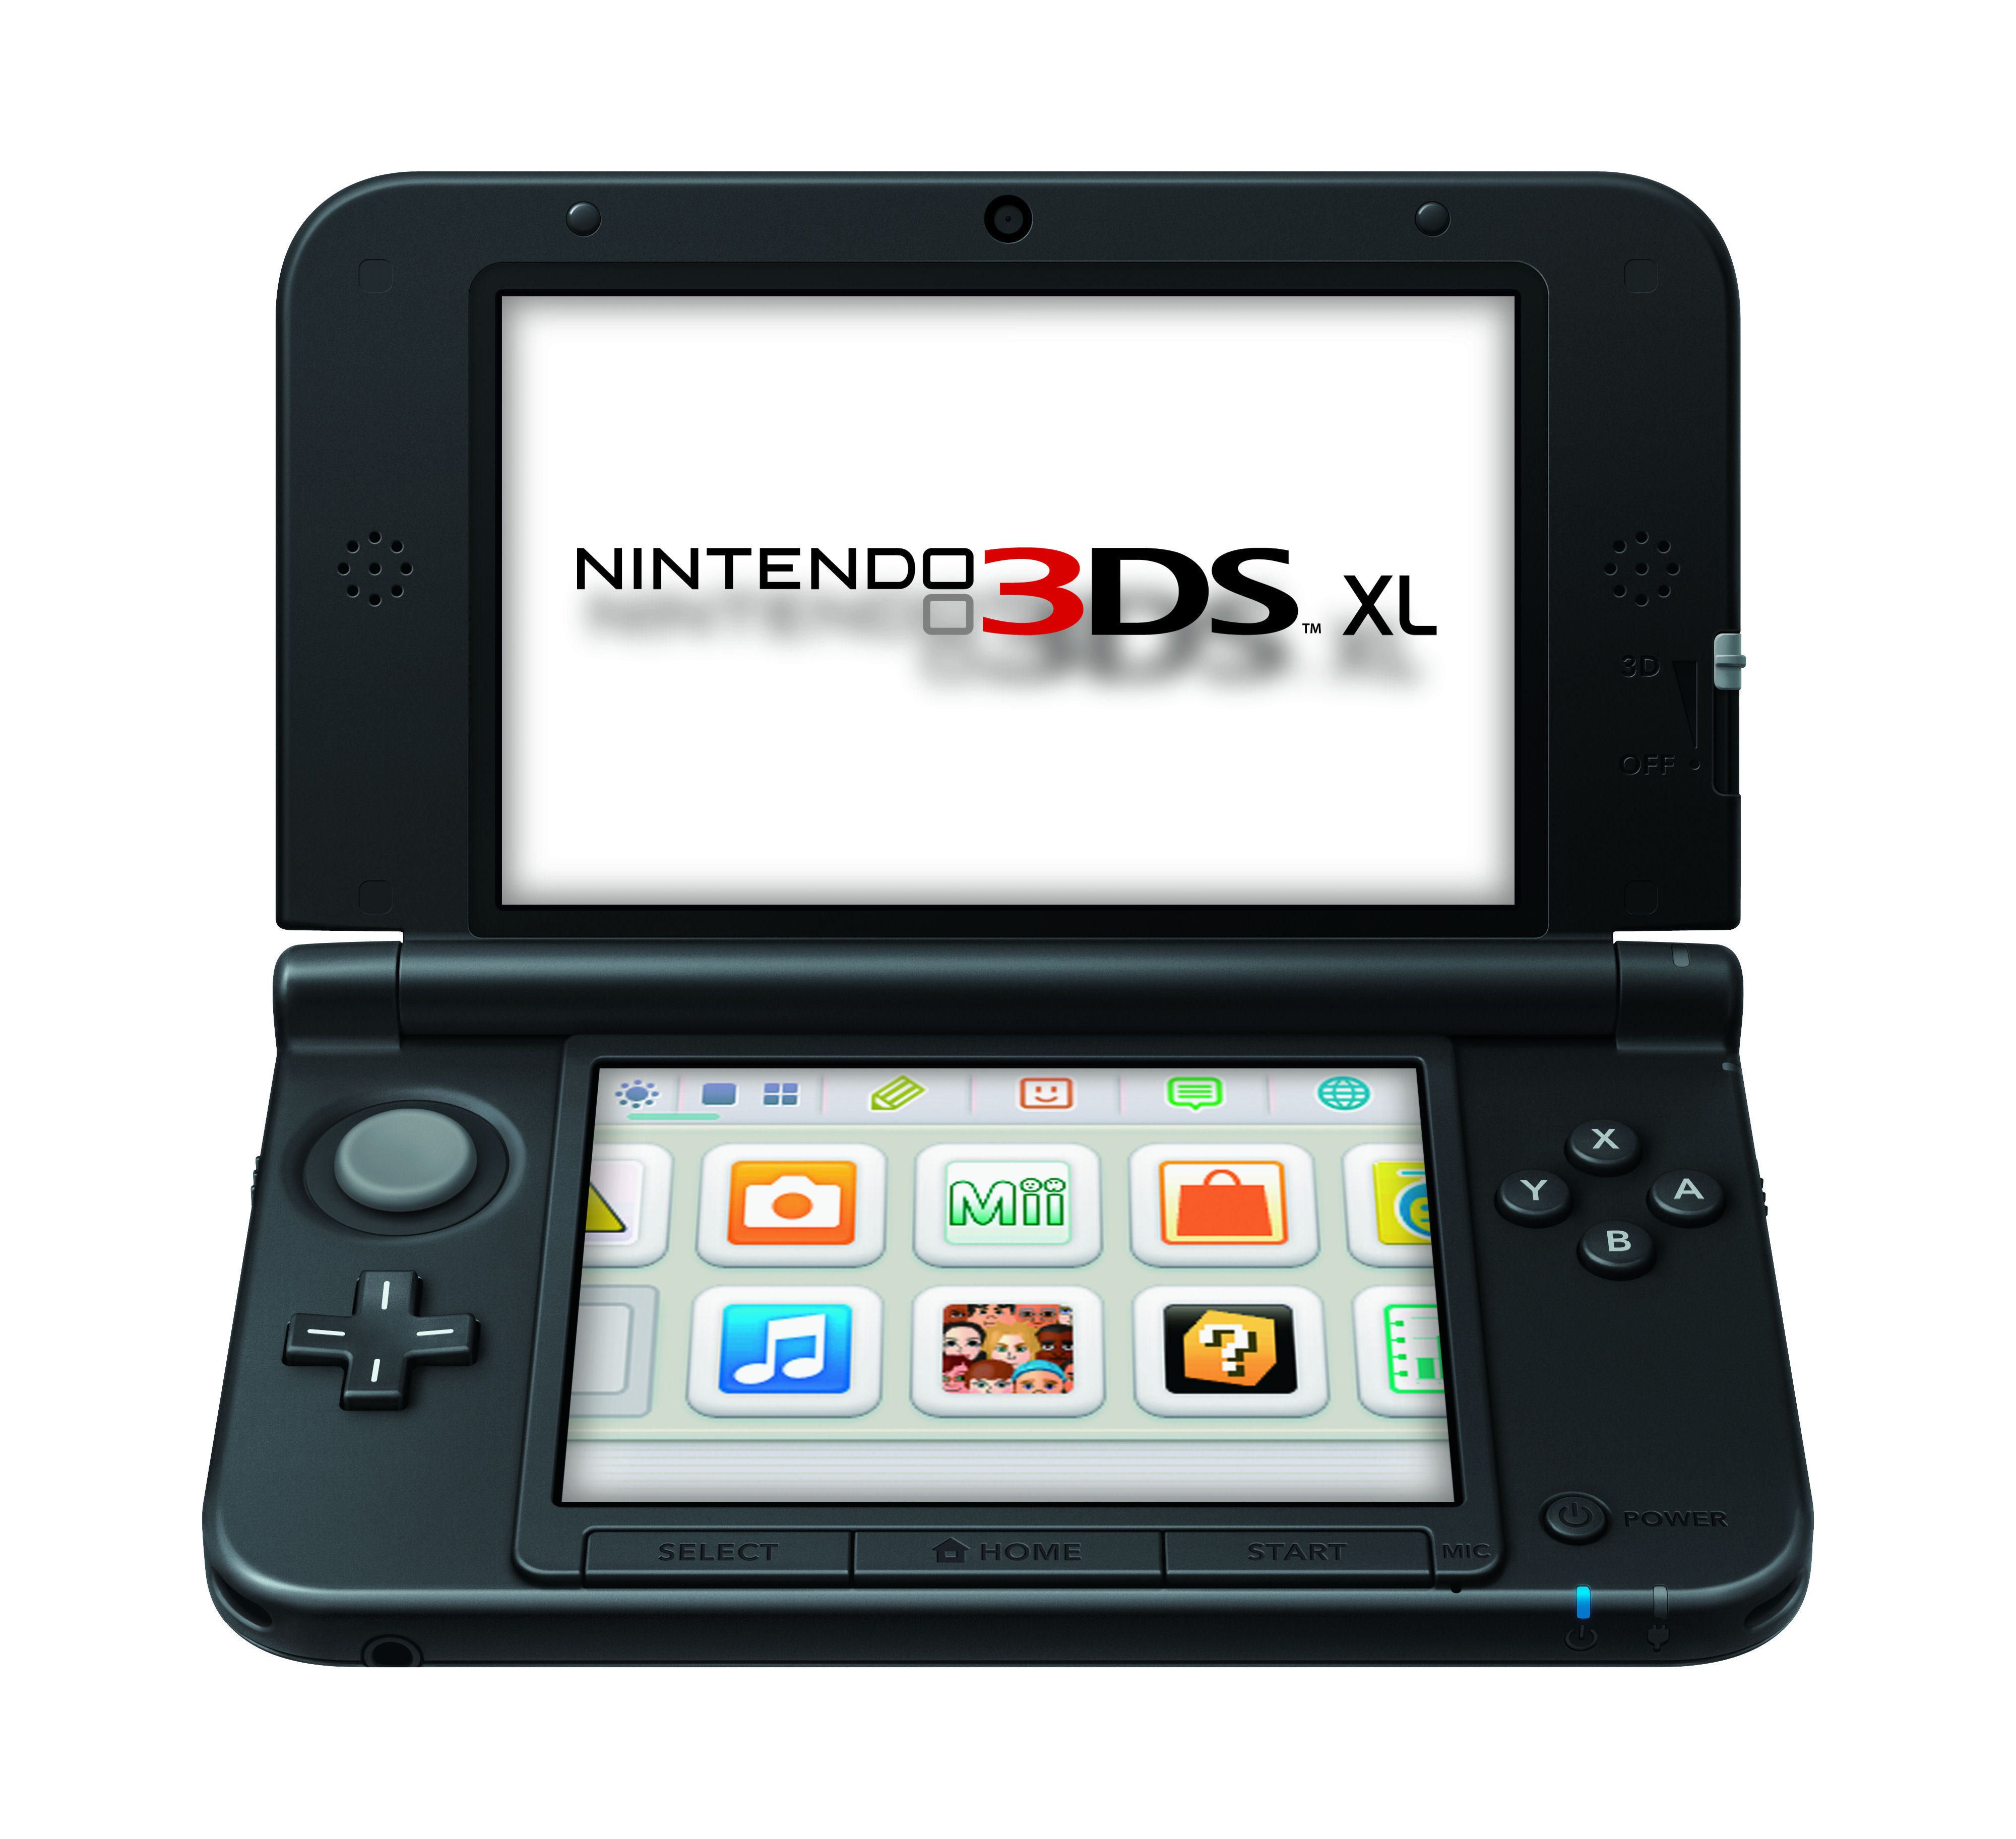 Accord prefer deep Nintendo 3DS XL system - Red/Black | Walmart Canada